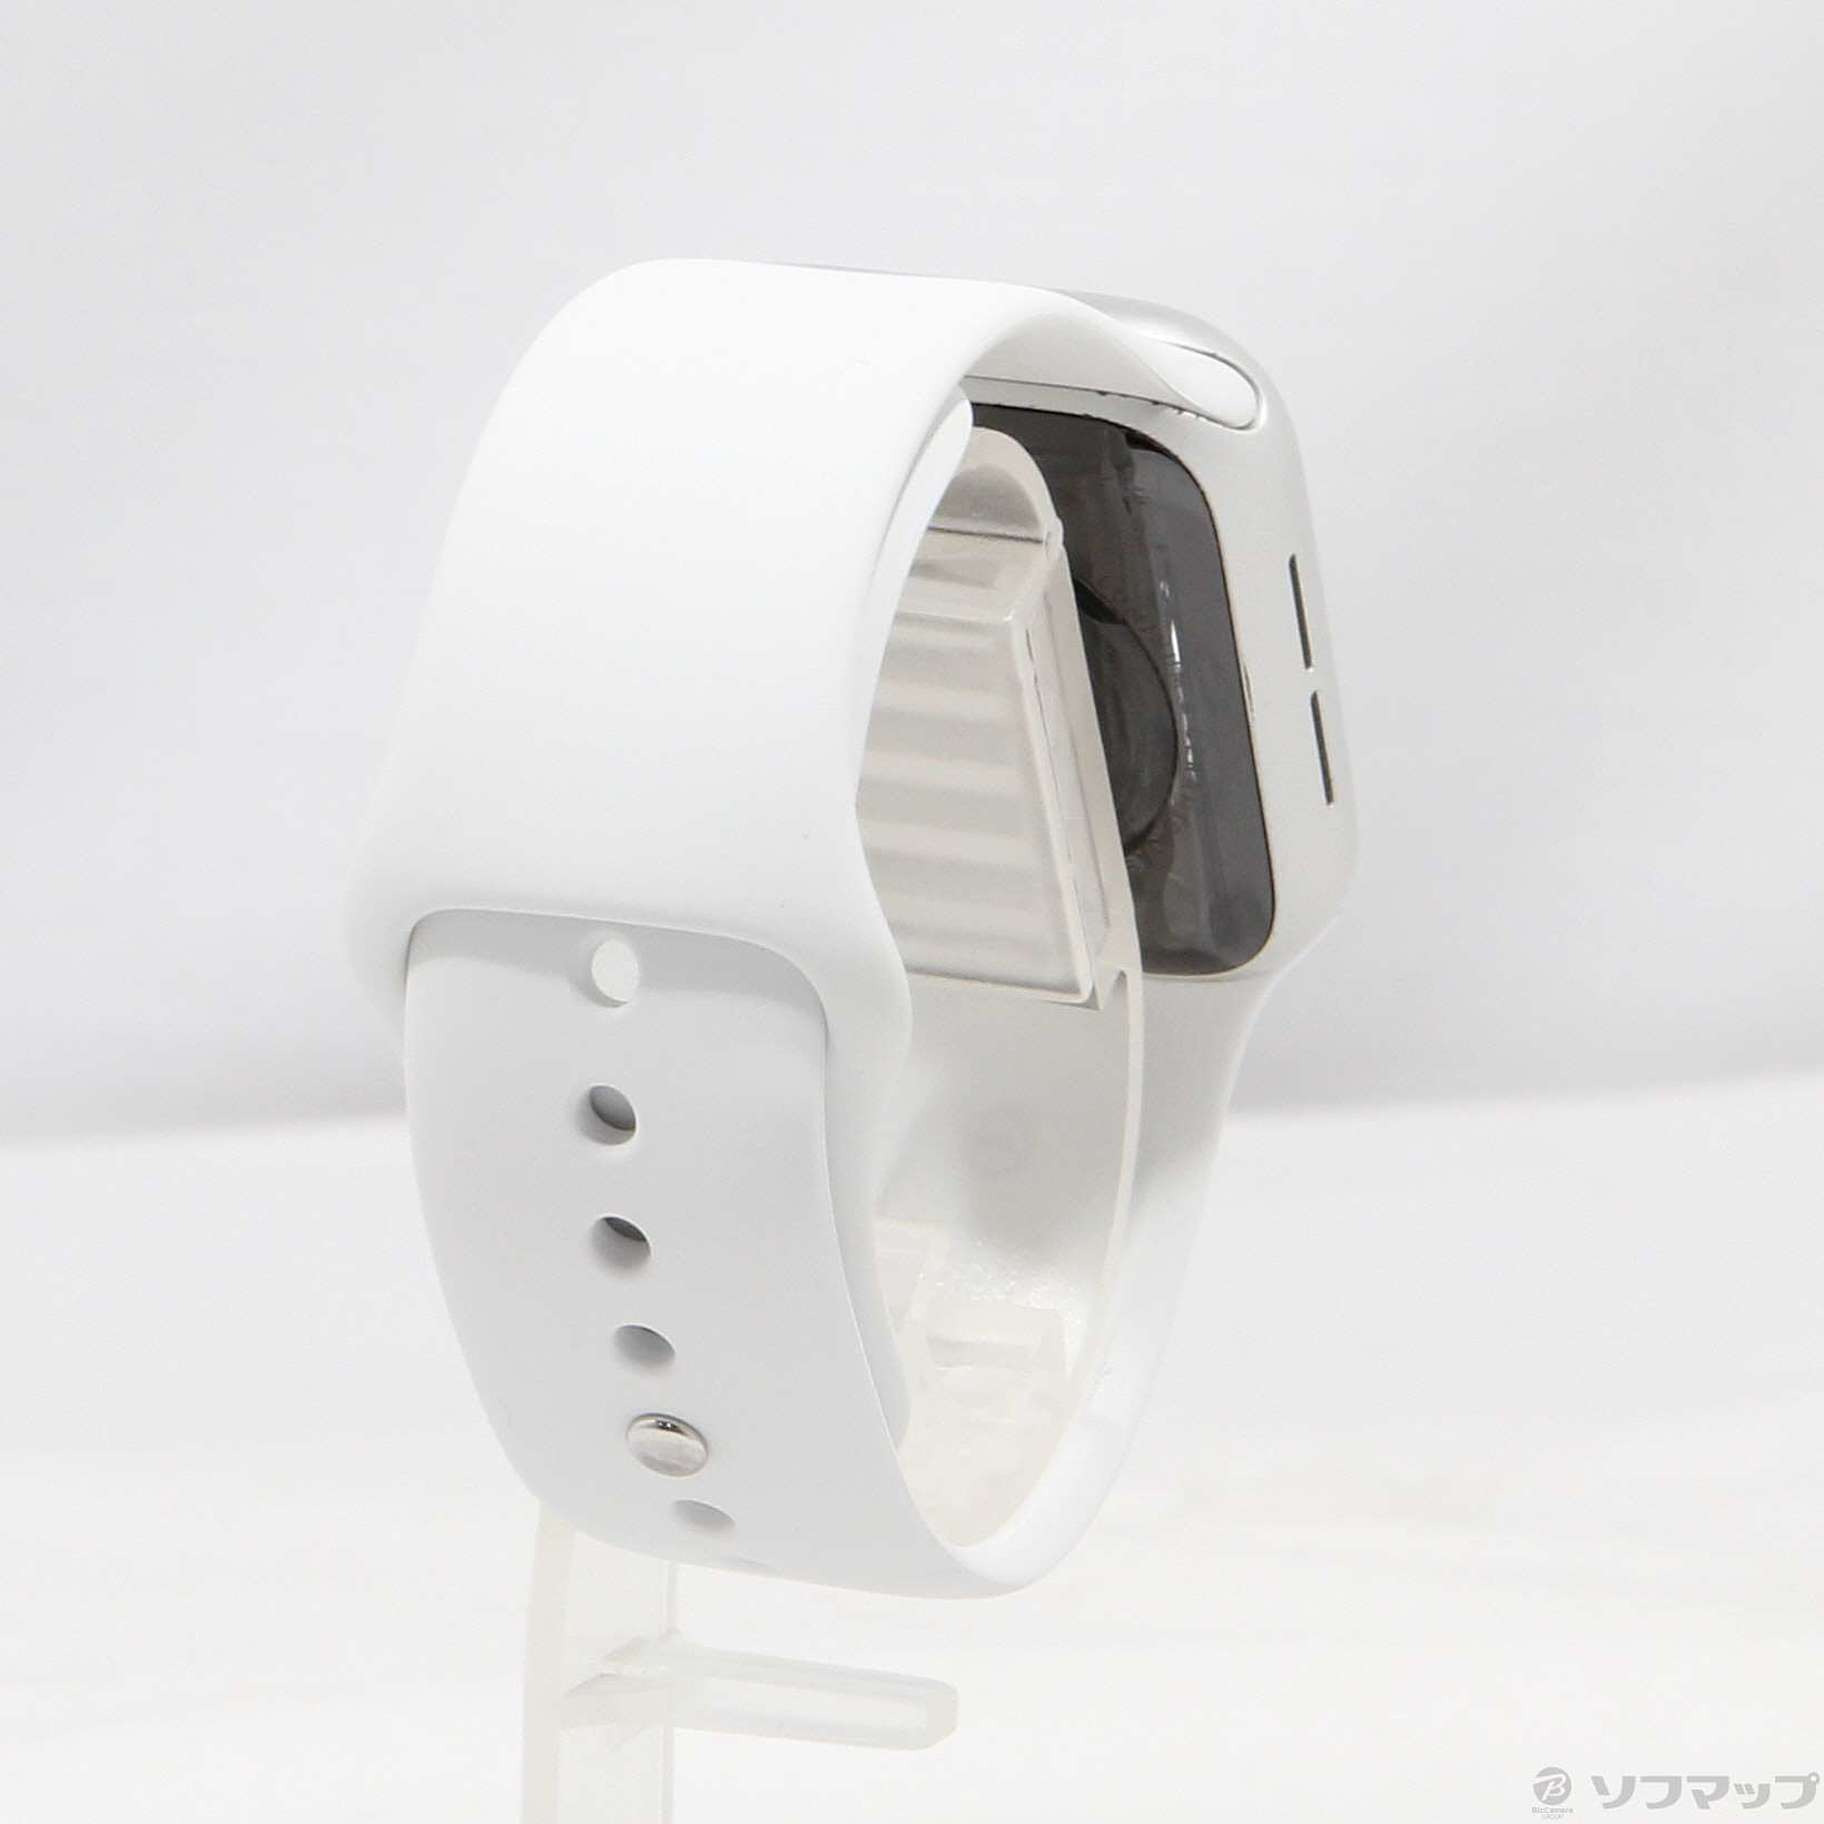 Apple Watch SE 第1世代 GPS 40mm シルバーアルミニウムケース ホワイトスポーツバンド